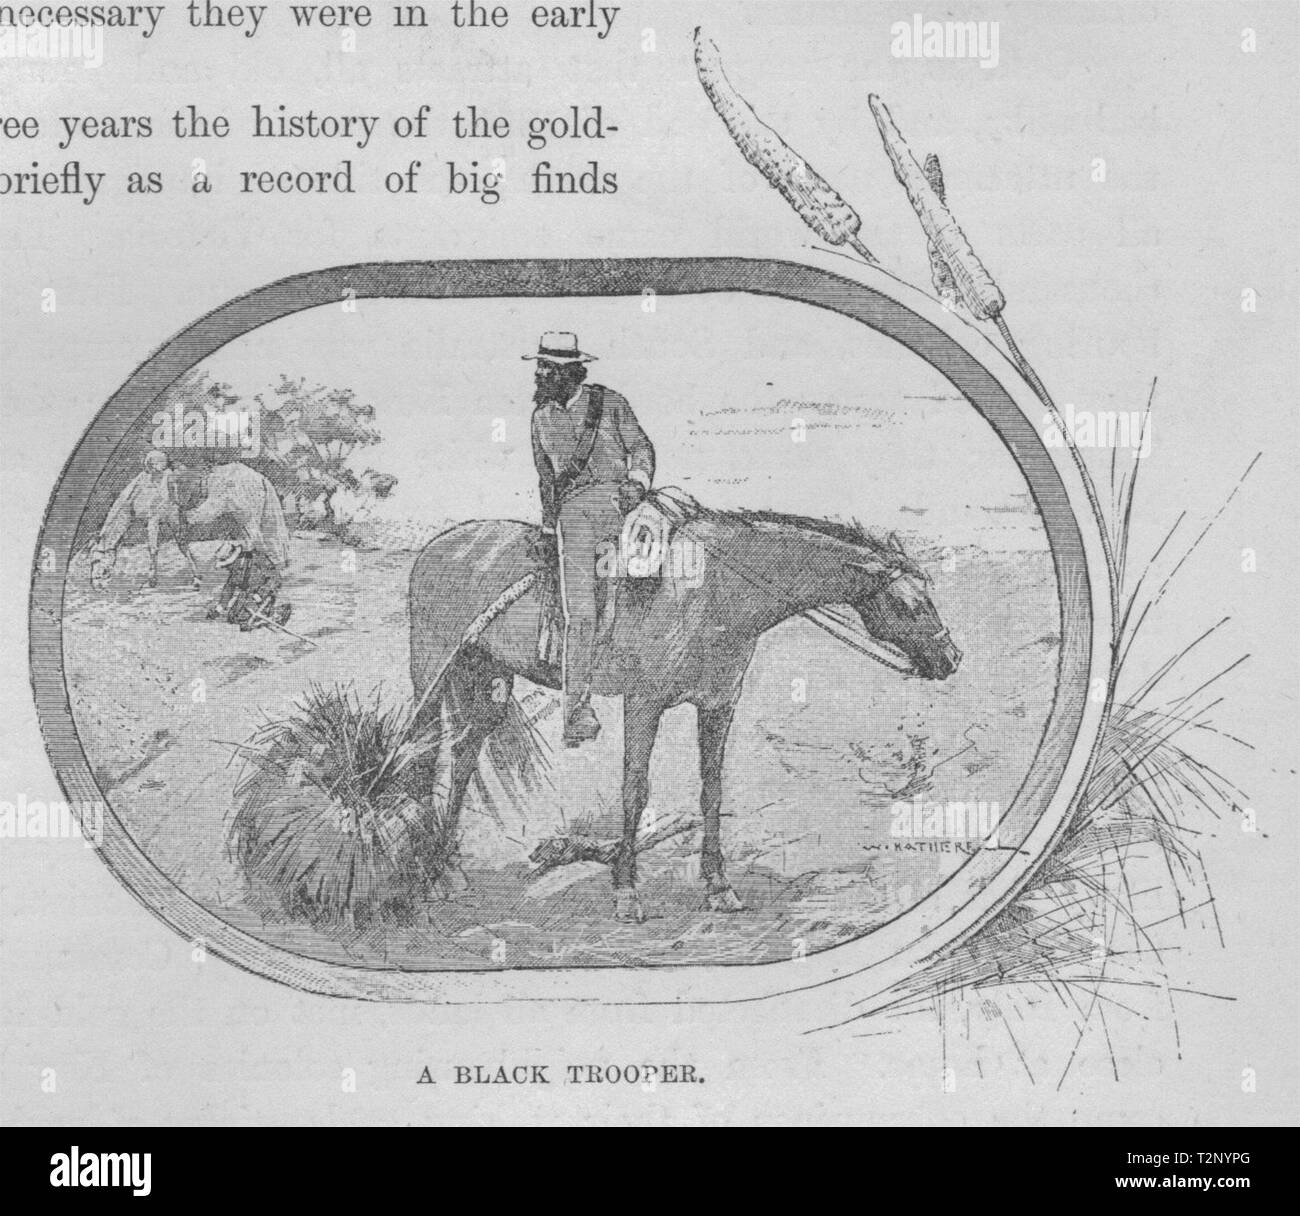 A Black Trooper. Gold. Australia 1890 antique vintage print picture Stock Photo